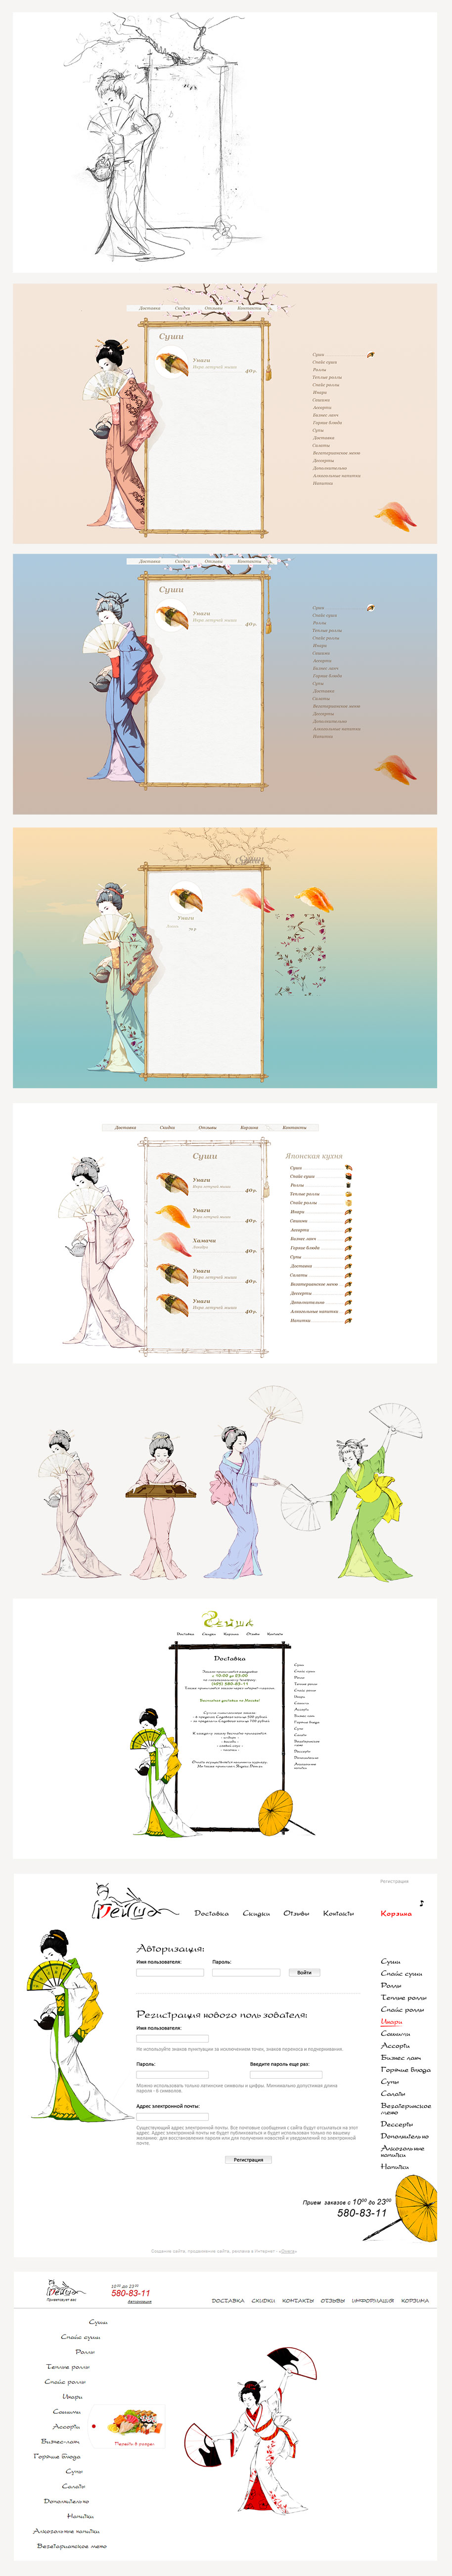 Сайт доставки суши Гейша, концепция сайта и примеры страниц